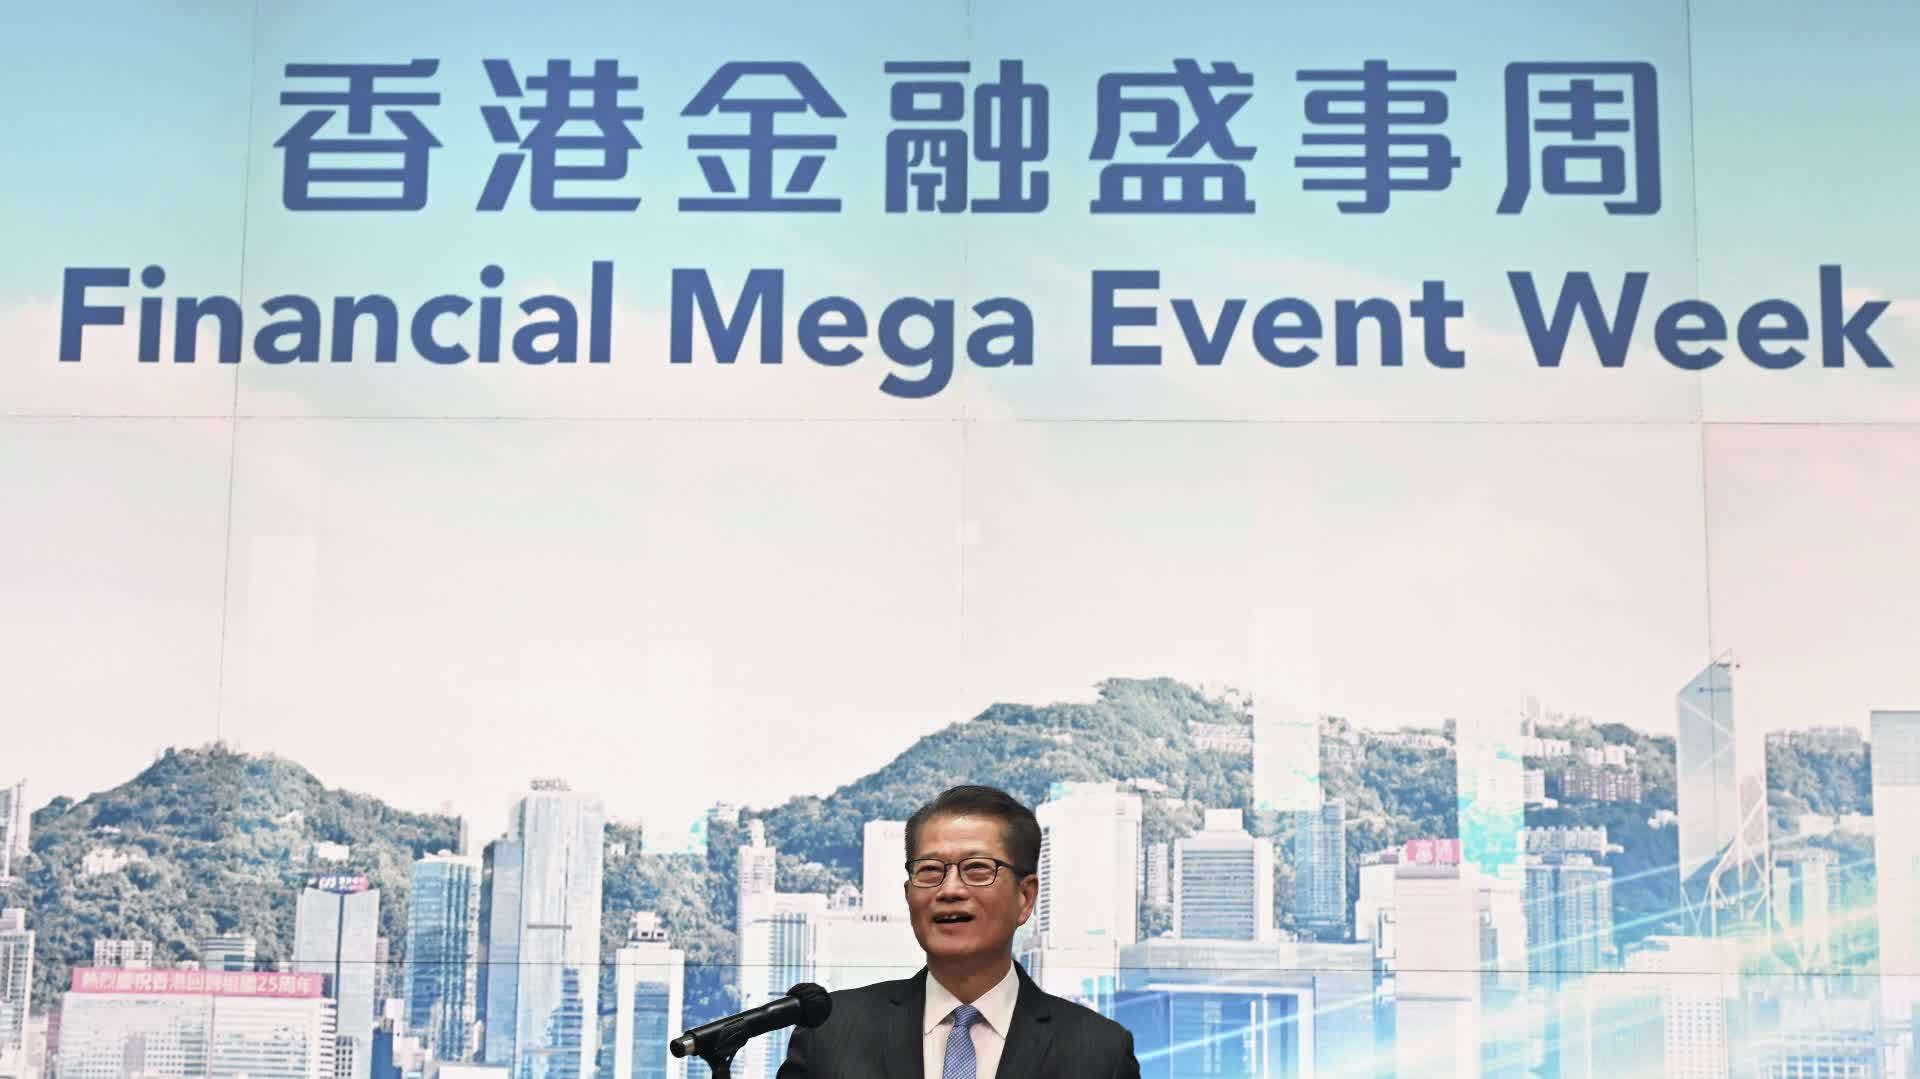 陳茂波：本周將迎「金融盛事周」　積極吸引更多重點企業來港